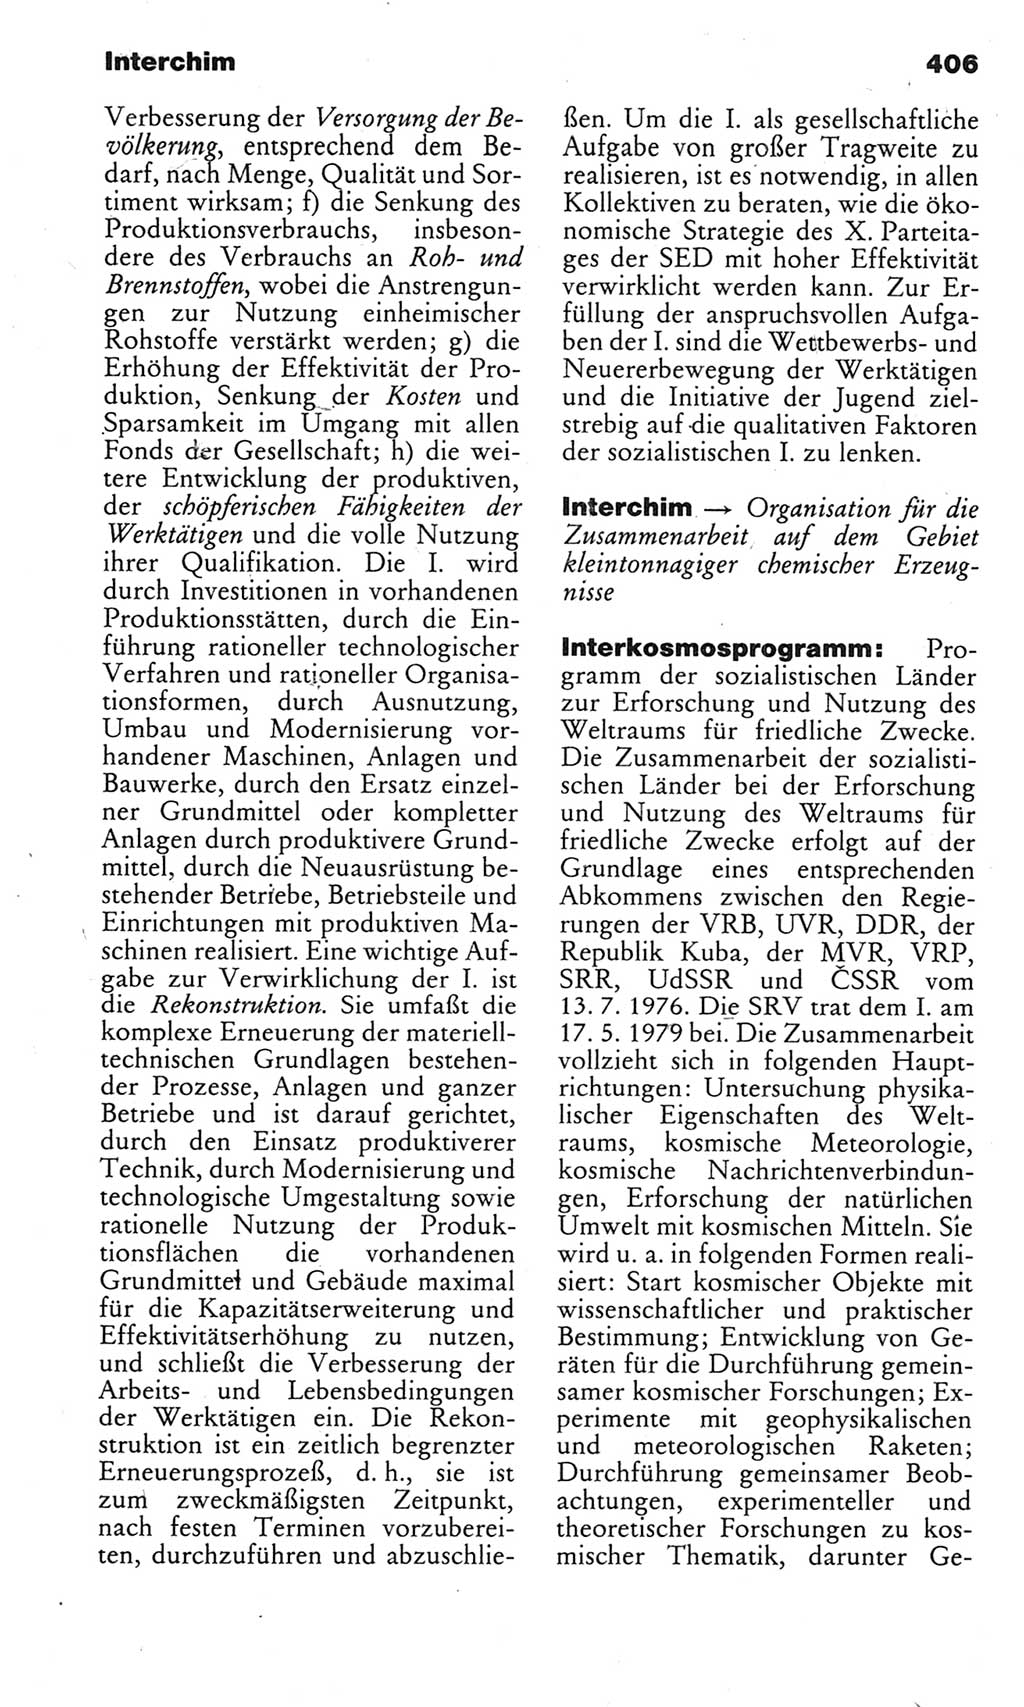 Kleines politisches Wörterbuch [Deutsche Demokratische Republik (DDR)] 1983, Seite 406 (Kl. pol. Wb. DDR 1983, S. 406)